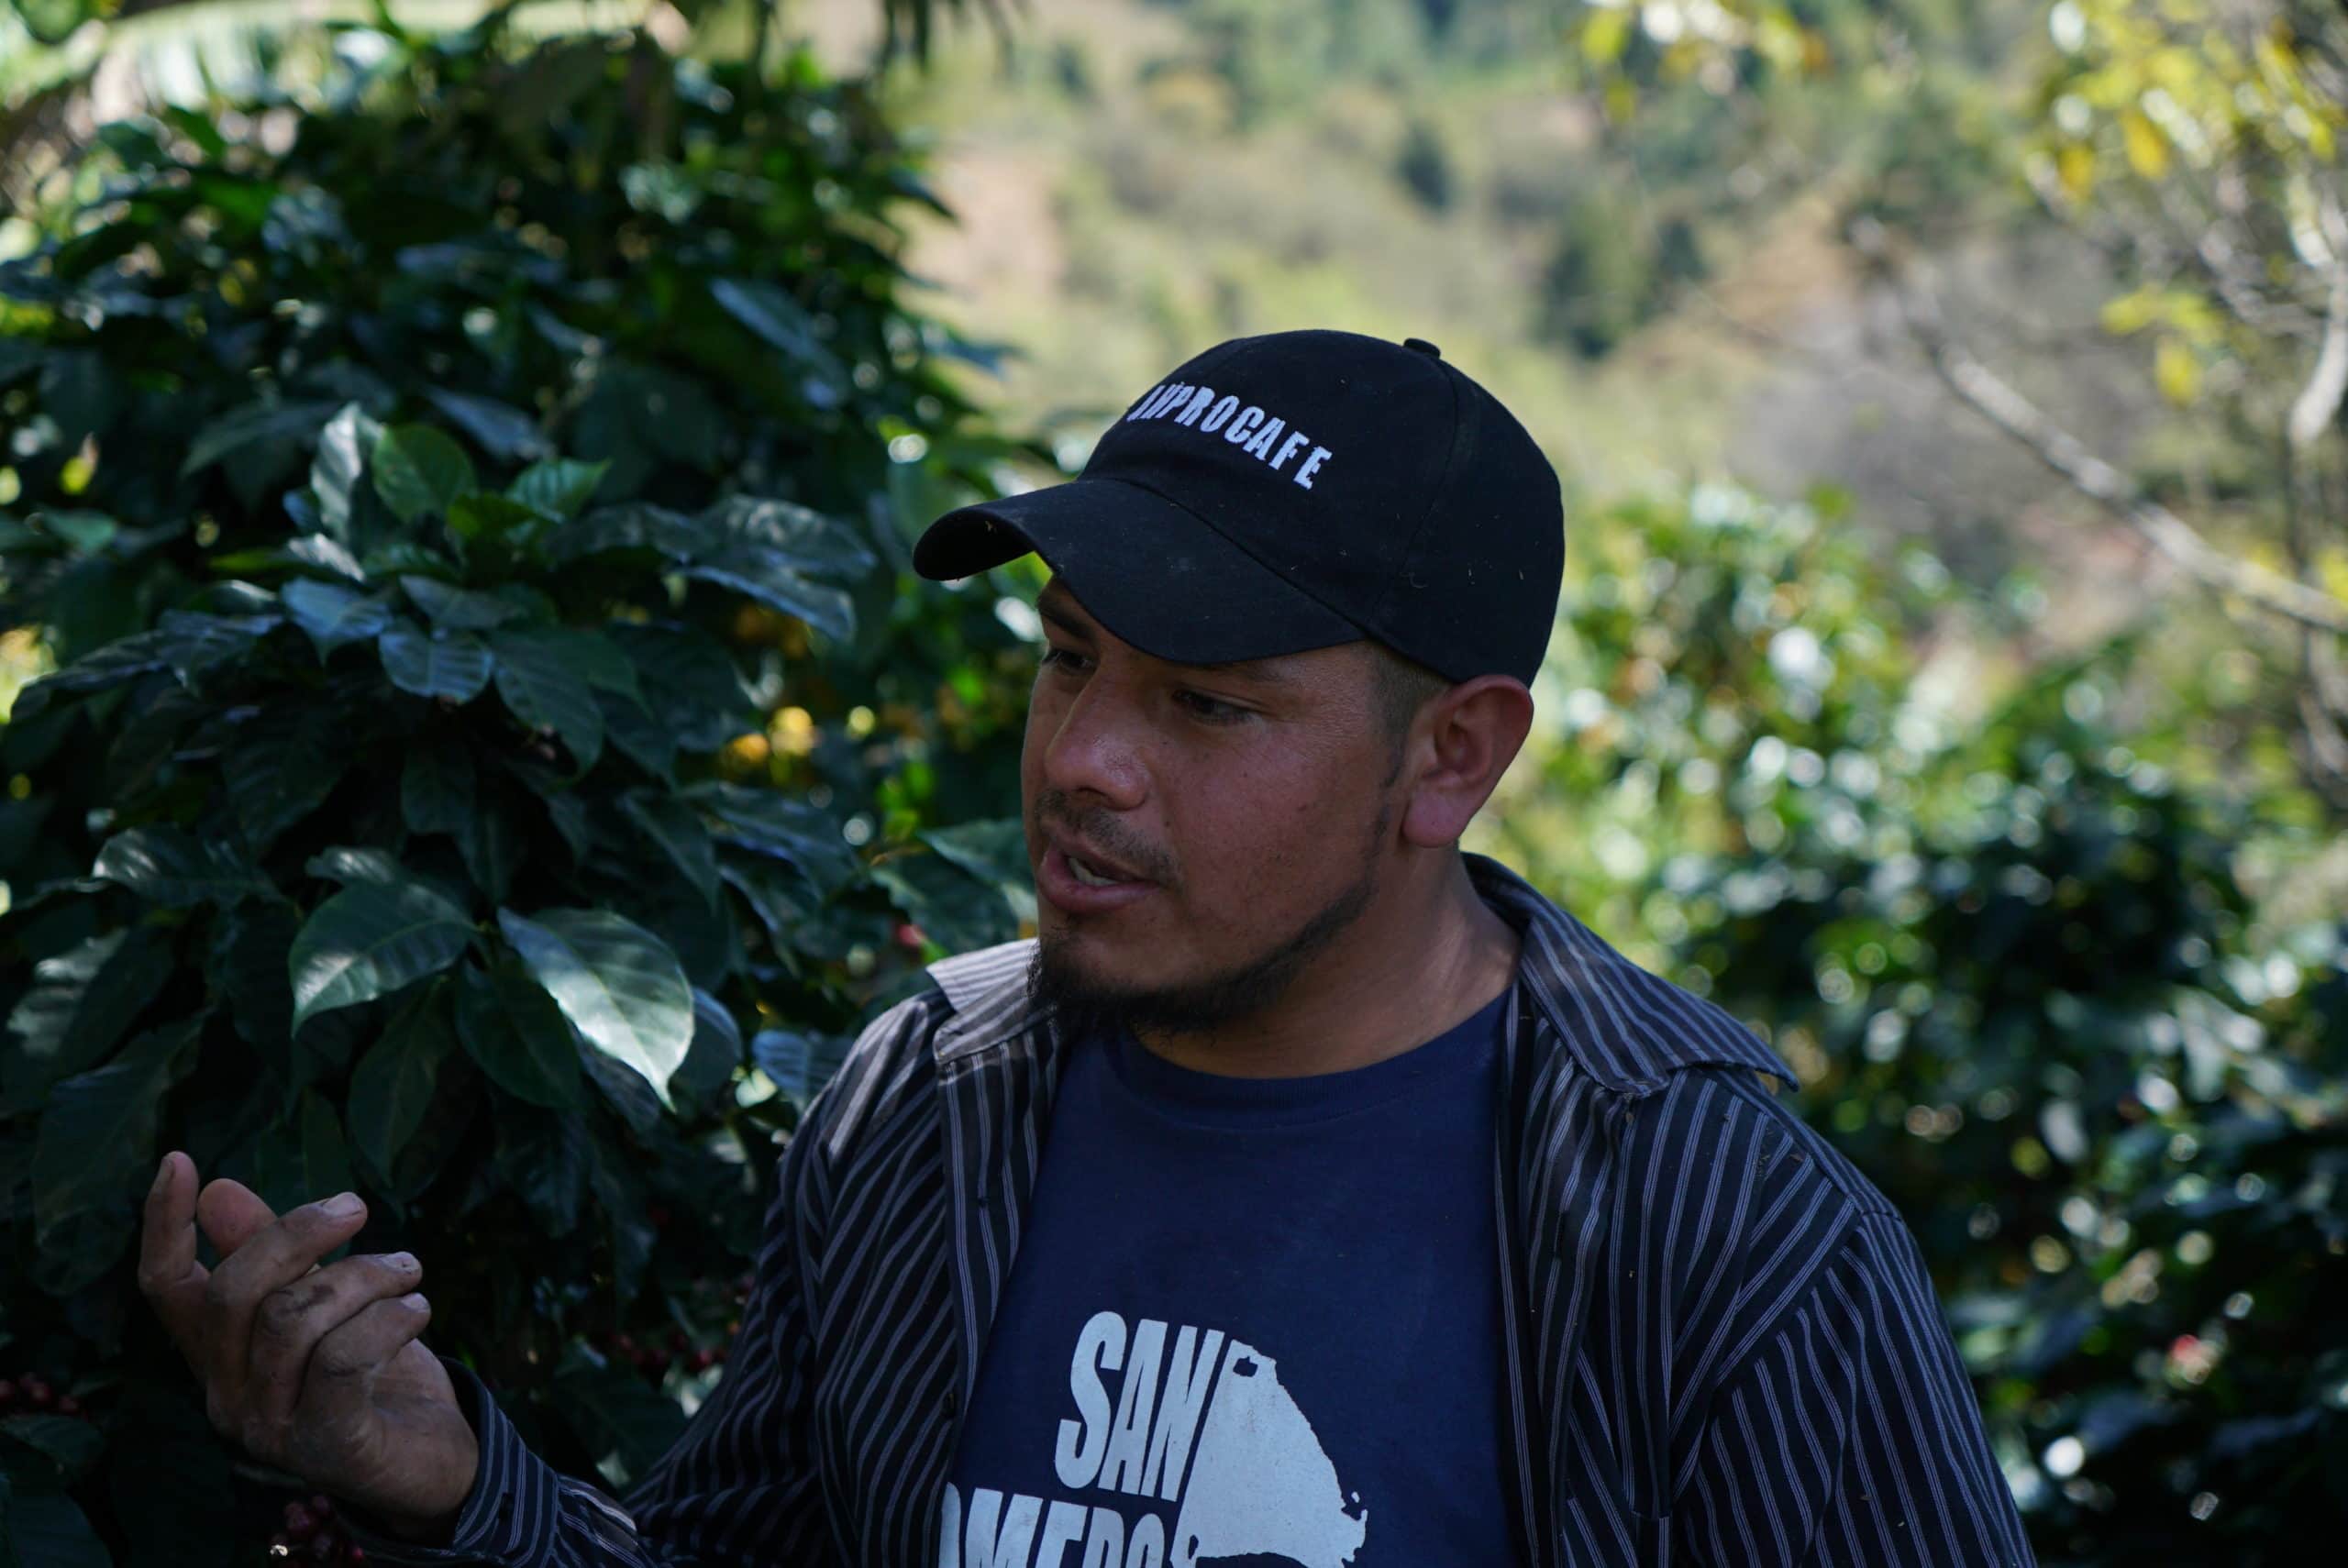 coffee farmer